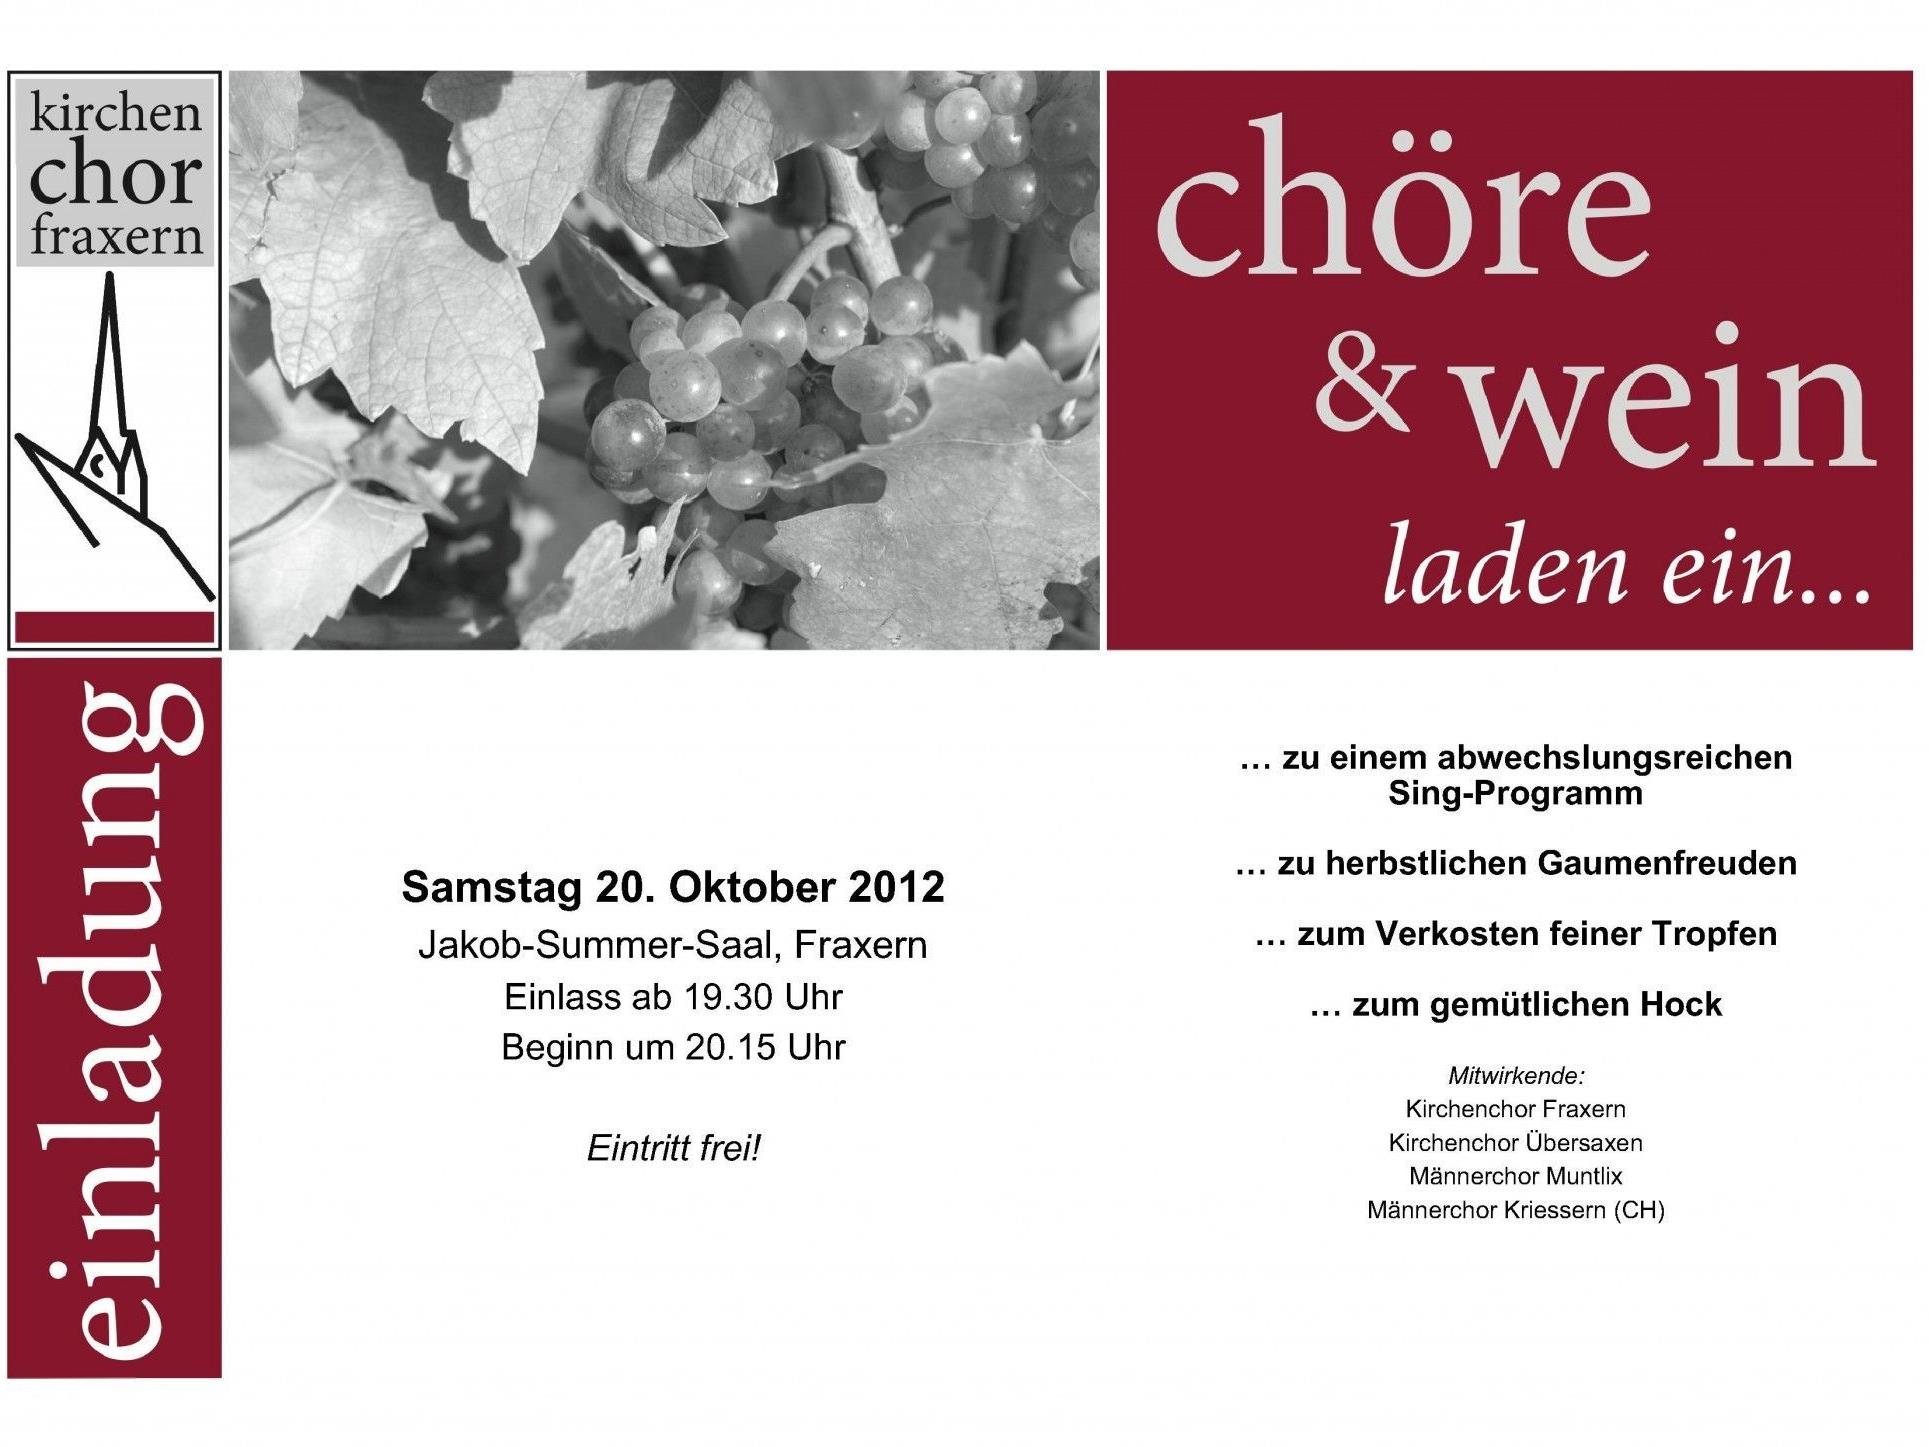 Kommenden Samstag, 20. Oktober ab 20.15 im Jakob-Summer-Saal: Ein besonderes Konzert verschiedener Chöre.